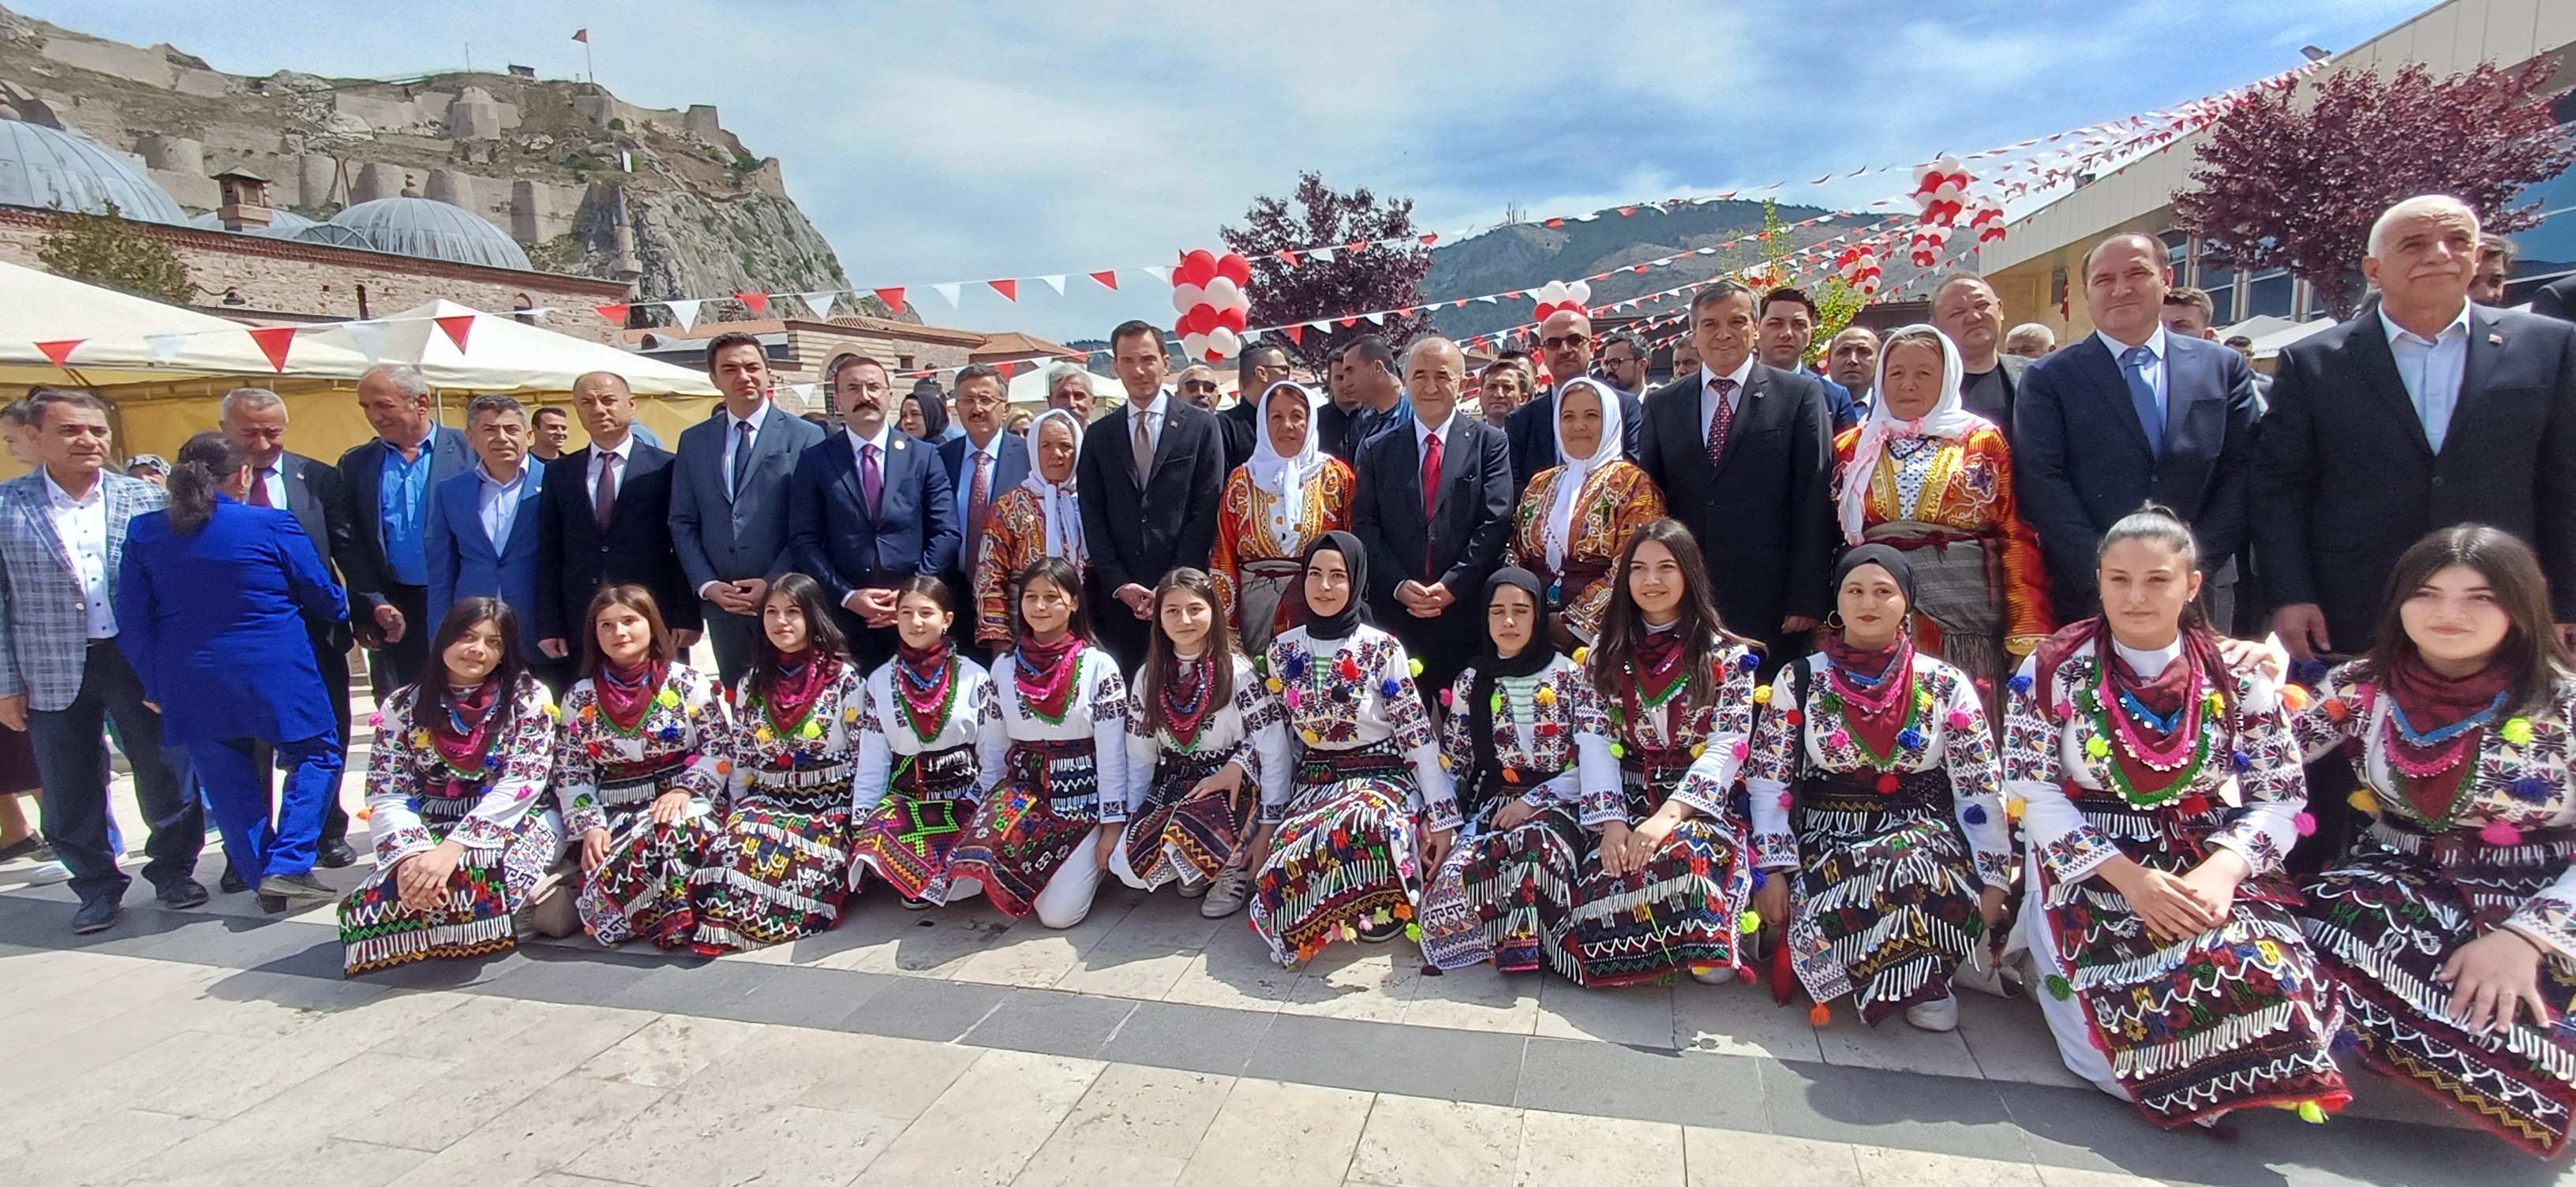 Turizm Haftası Etkinlikleri Kapsamında Tokat’ta Program Düzenlendi (3)